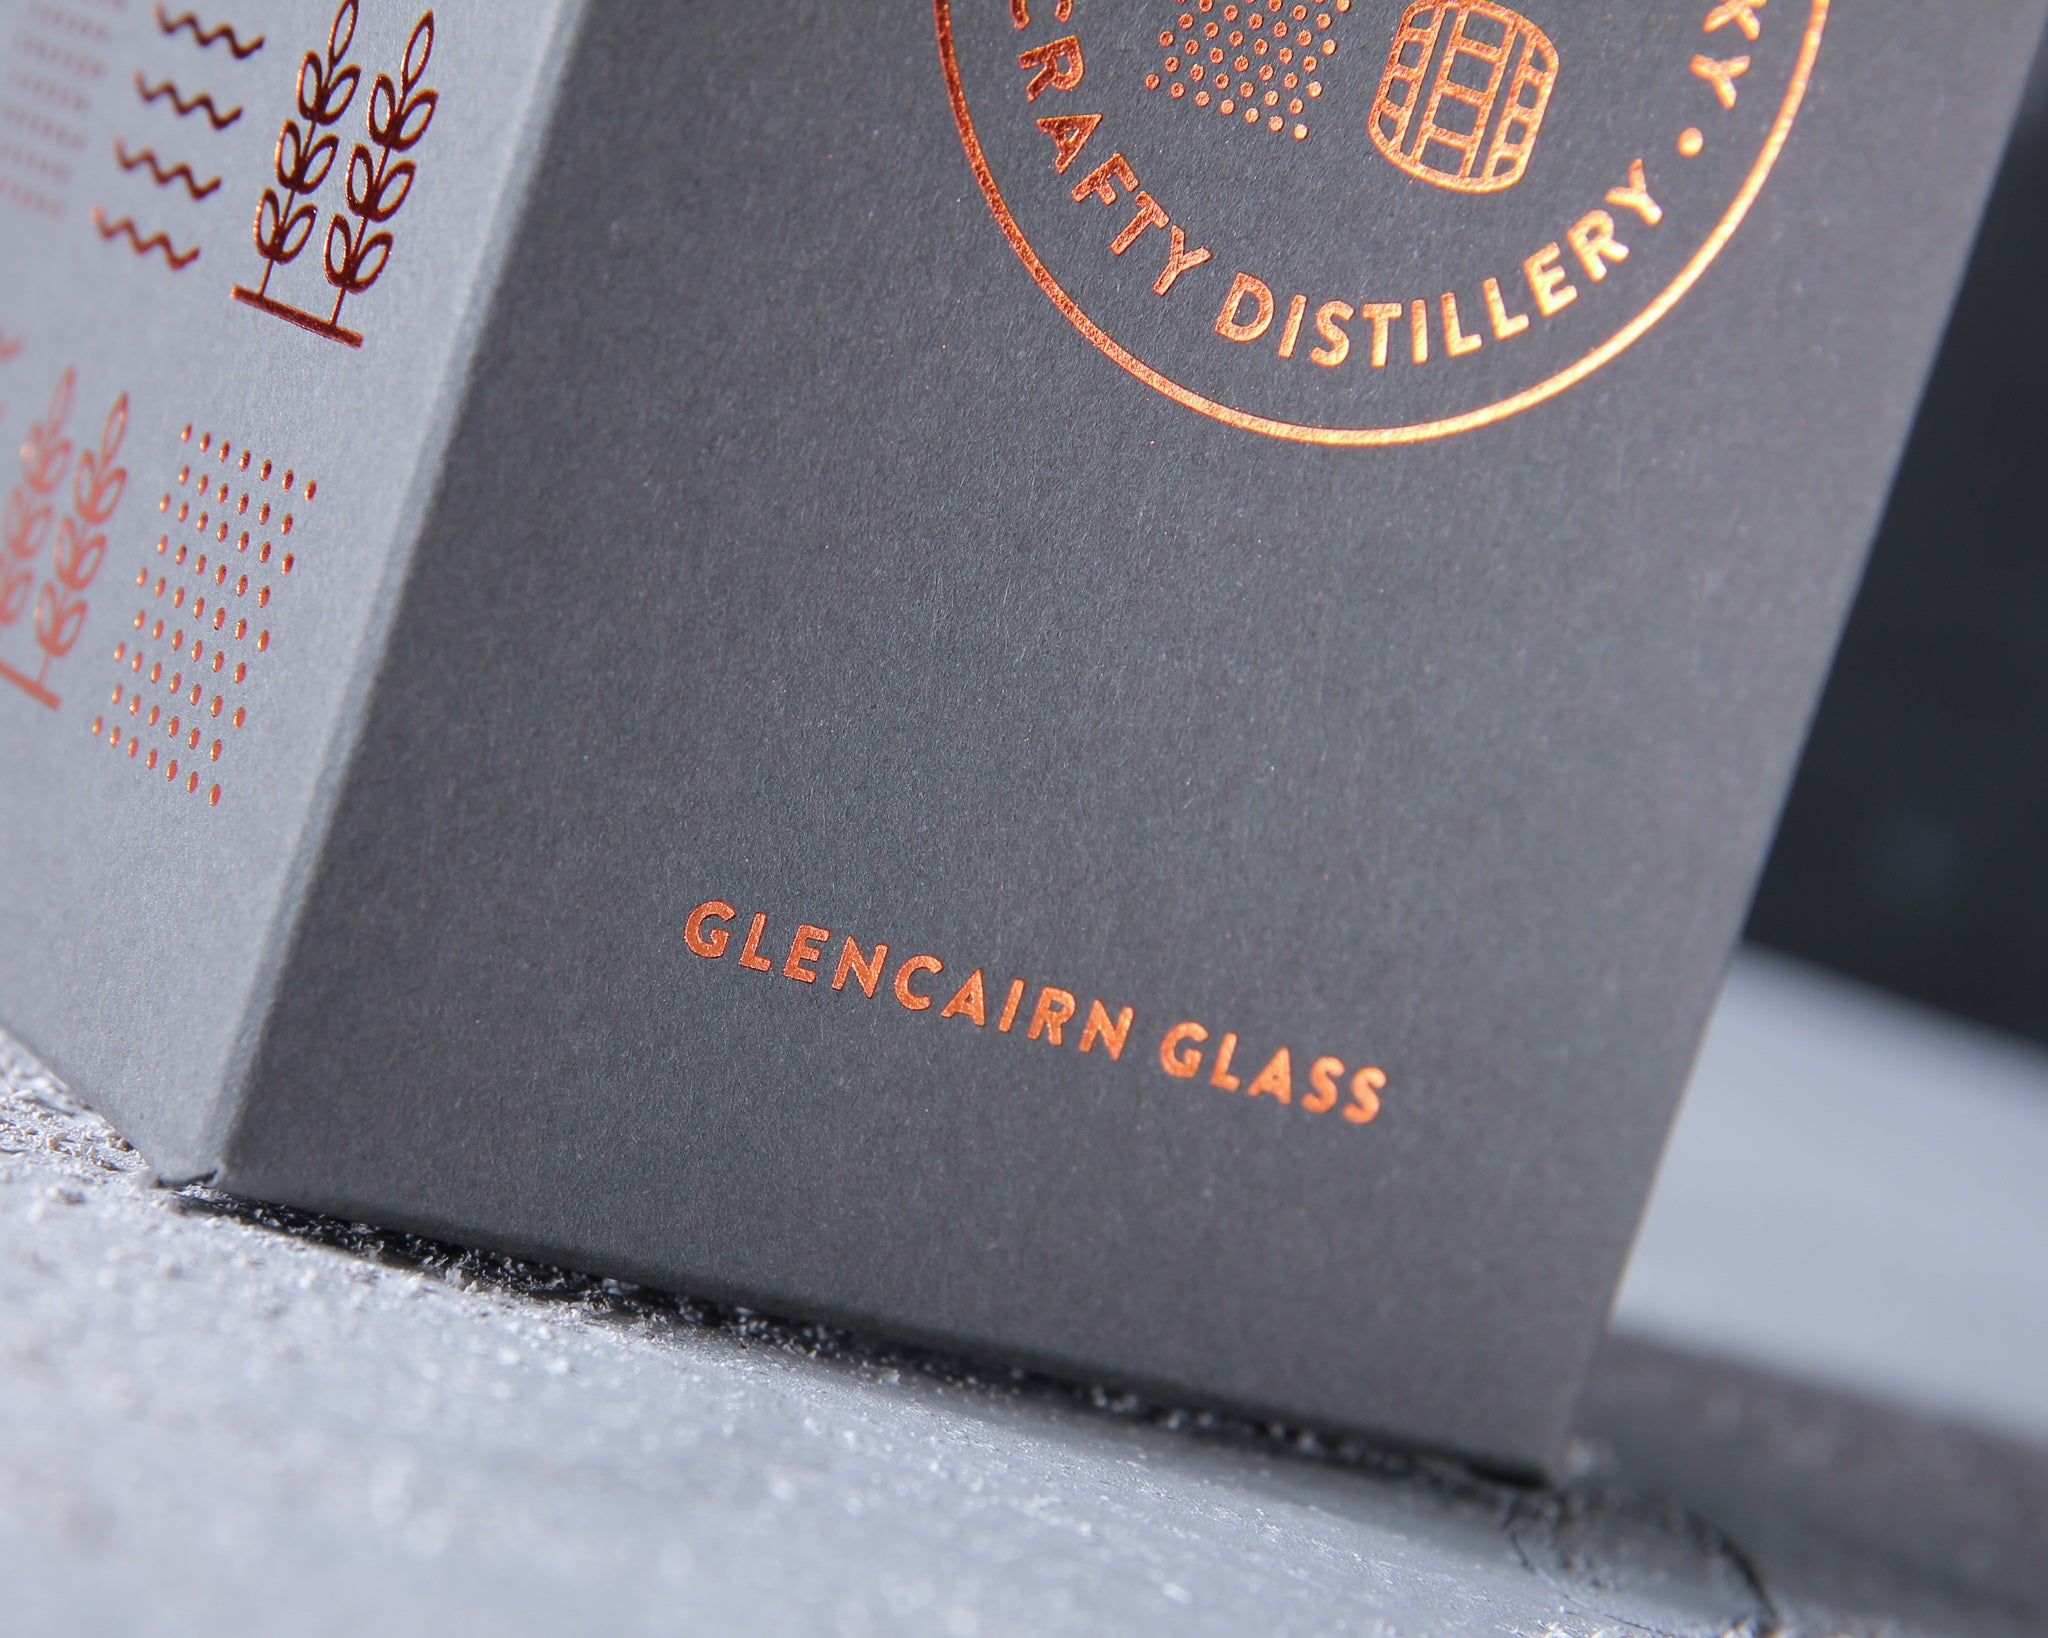 Billy&Co Whisky - Glencairn Glass